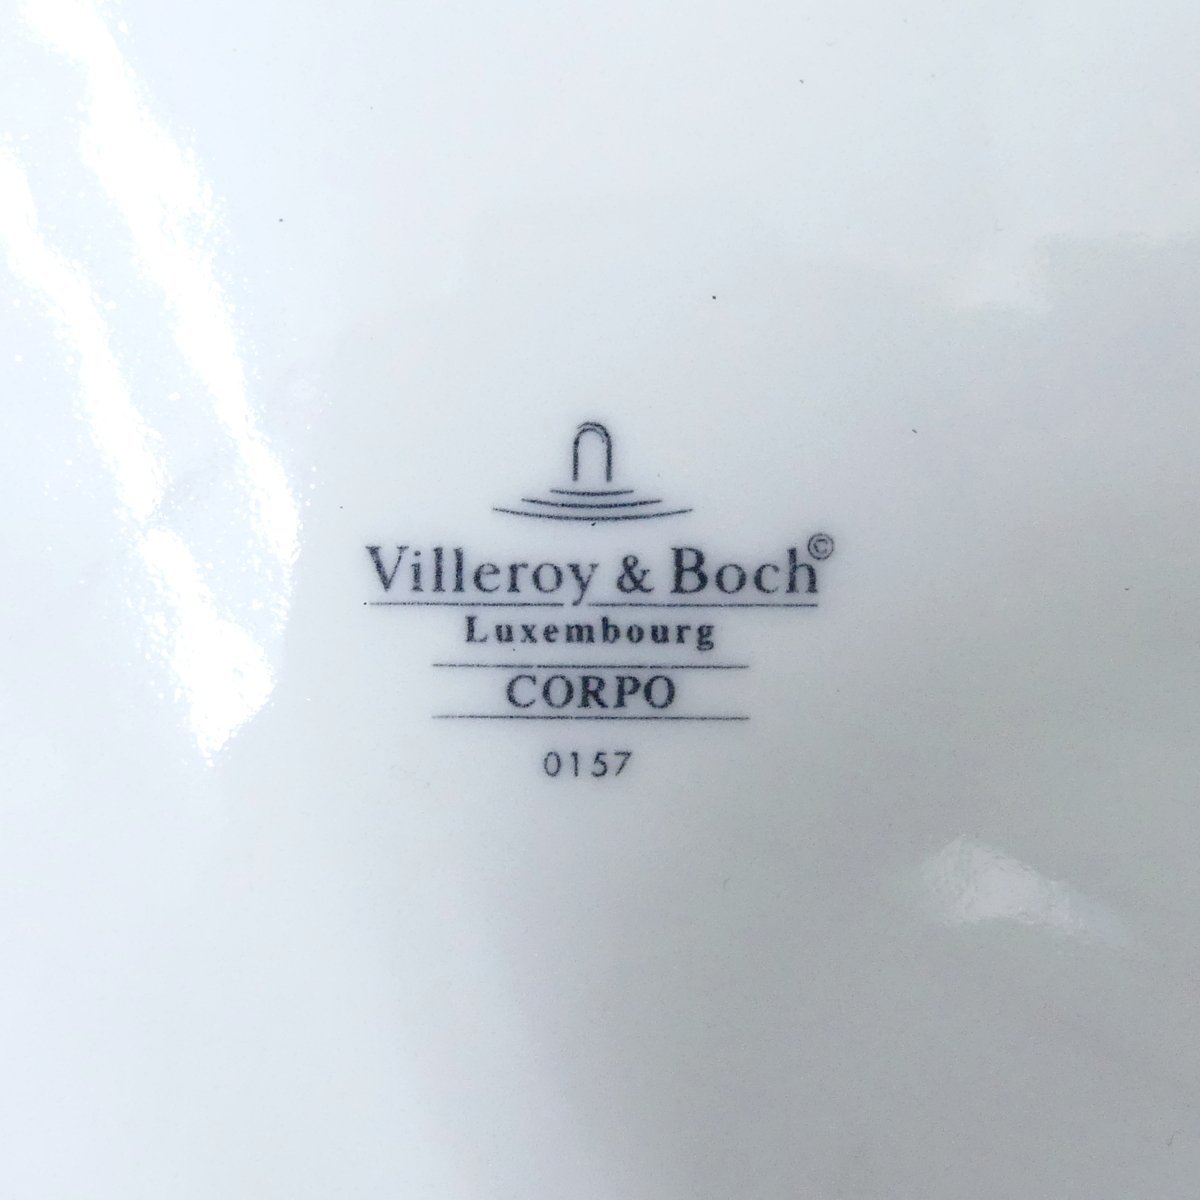 Villeroy&Boch ビレロイ＆ボッホ Luxembourg CORPO 風景 街 タウン 建物 直径約20cm プレート 洋食器 美品 /2401C_画像3